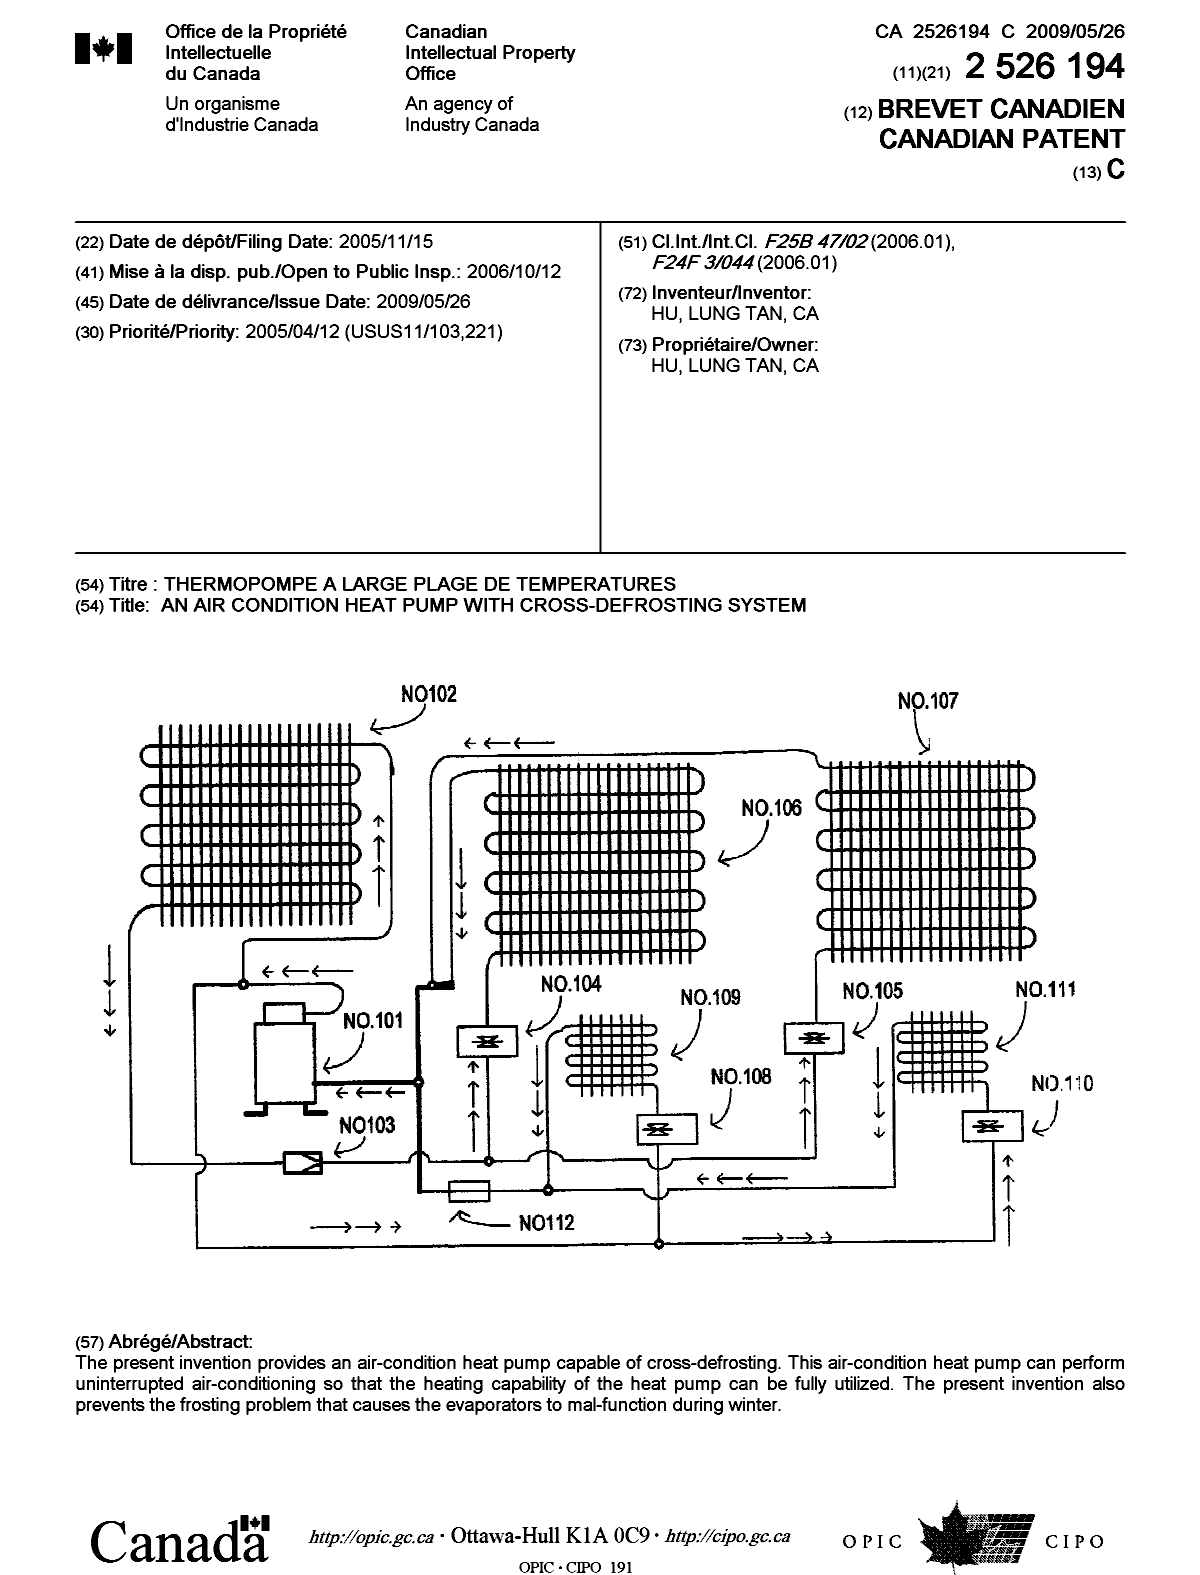 Document de brevet canadien 2526194. Page couverture 20090506. Image 1 de 1